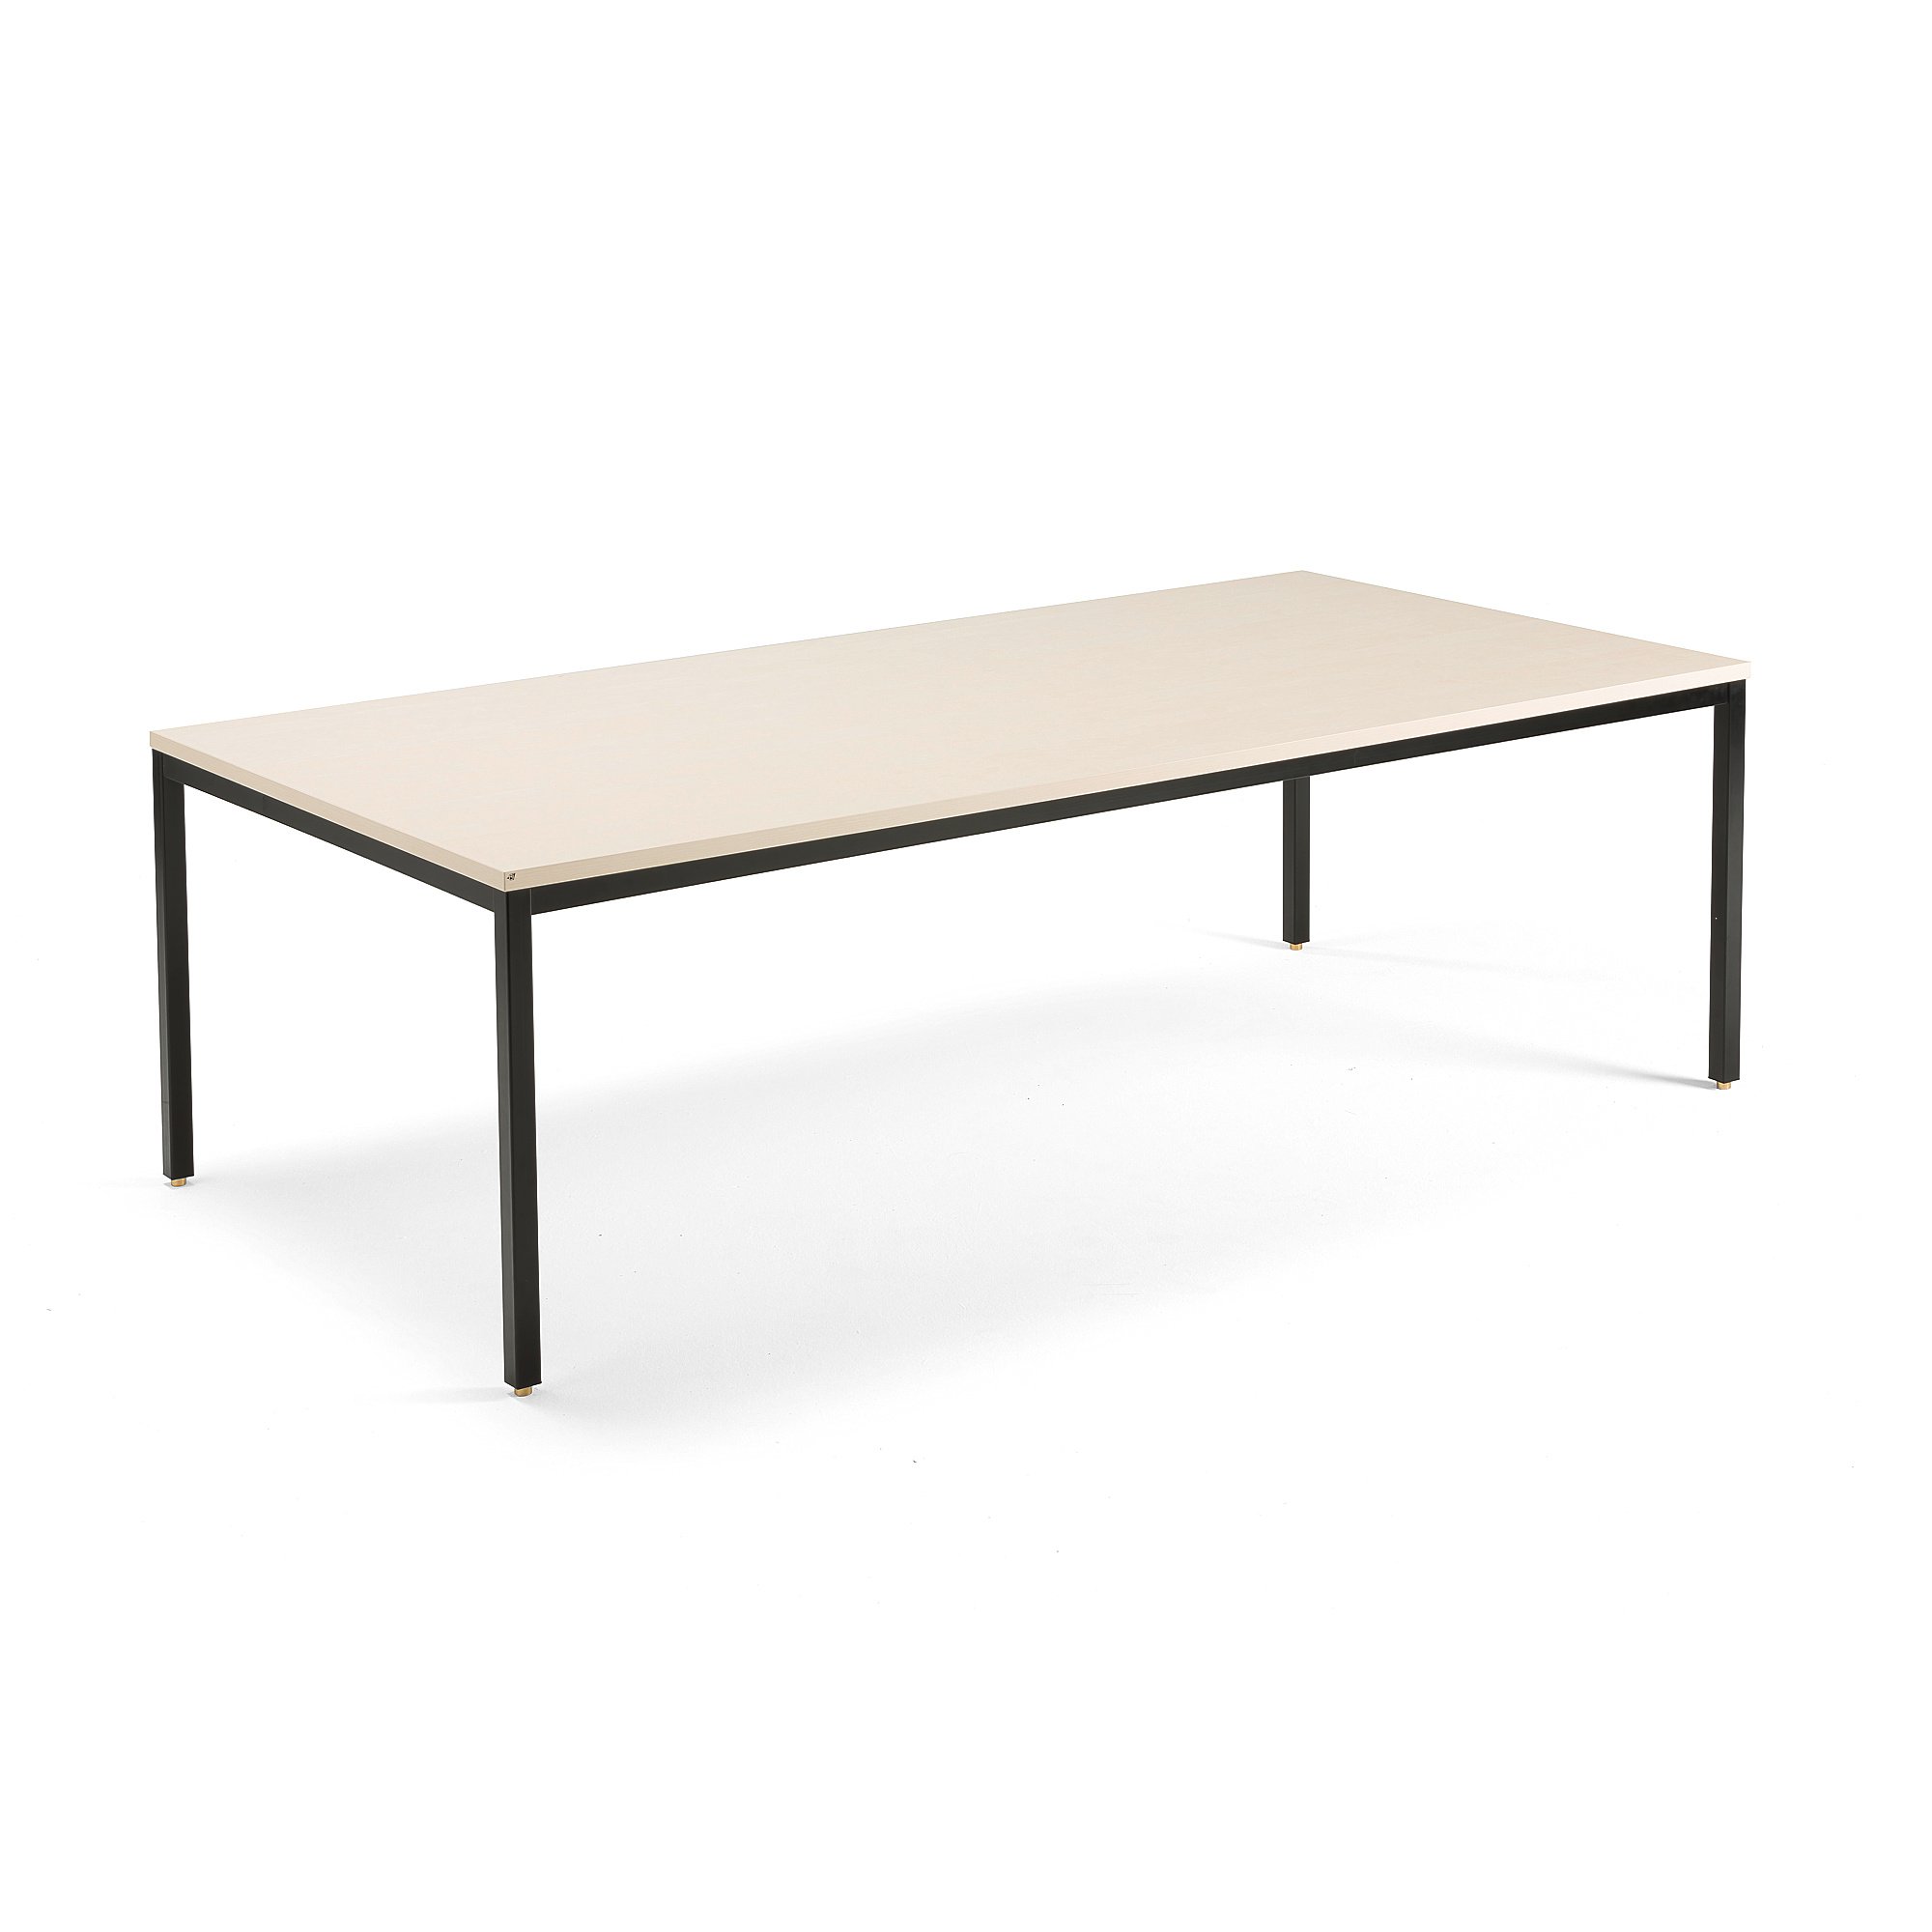 Jednací stůl QBUS, 2400x1200 mm, 4 nohy, černý rám, bříza